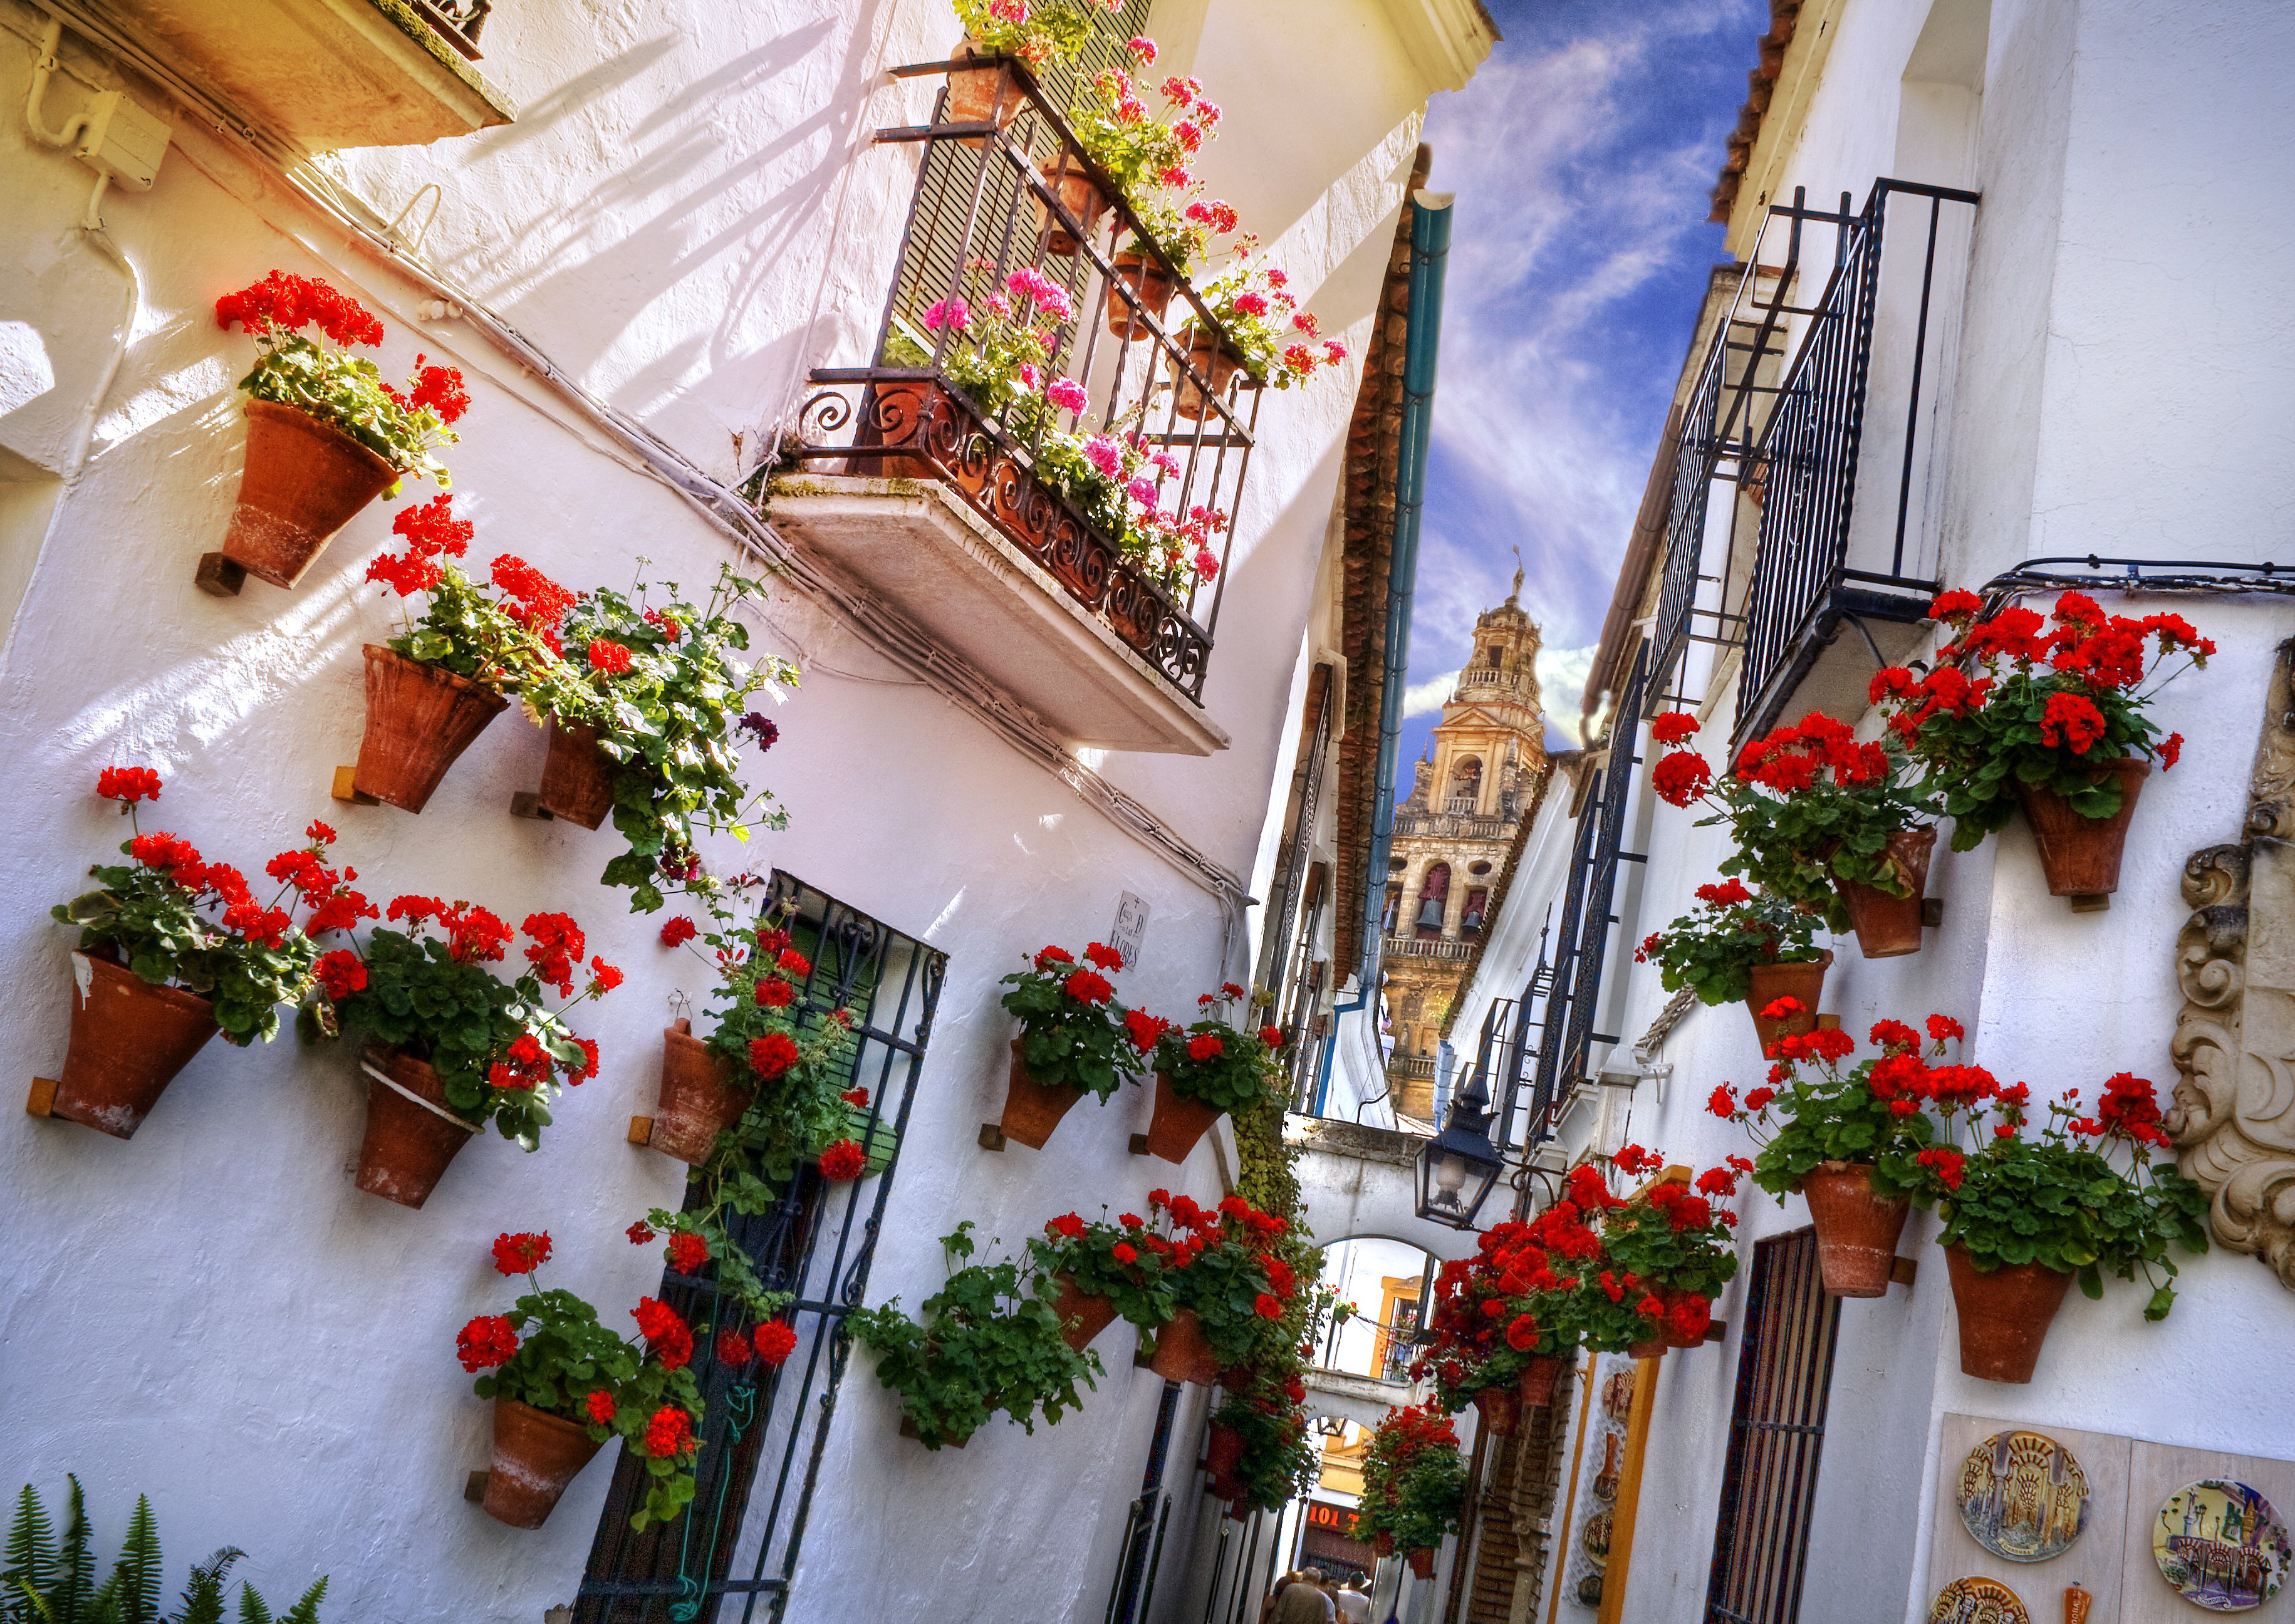 Street of flowers. Испания Кордова Цветочная улица. Цветущие улочки Испании. Севилья цветочные улочки. Испания город в цветах Кордова.